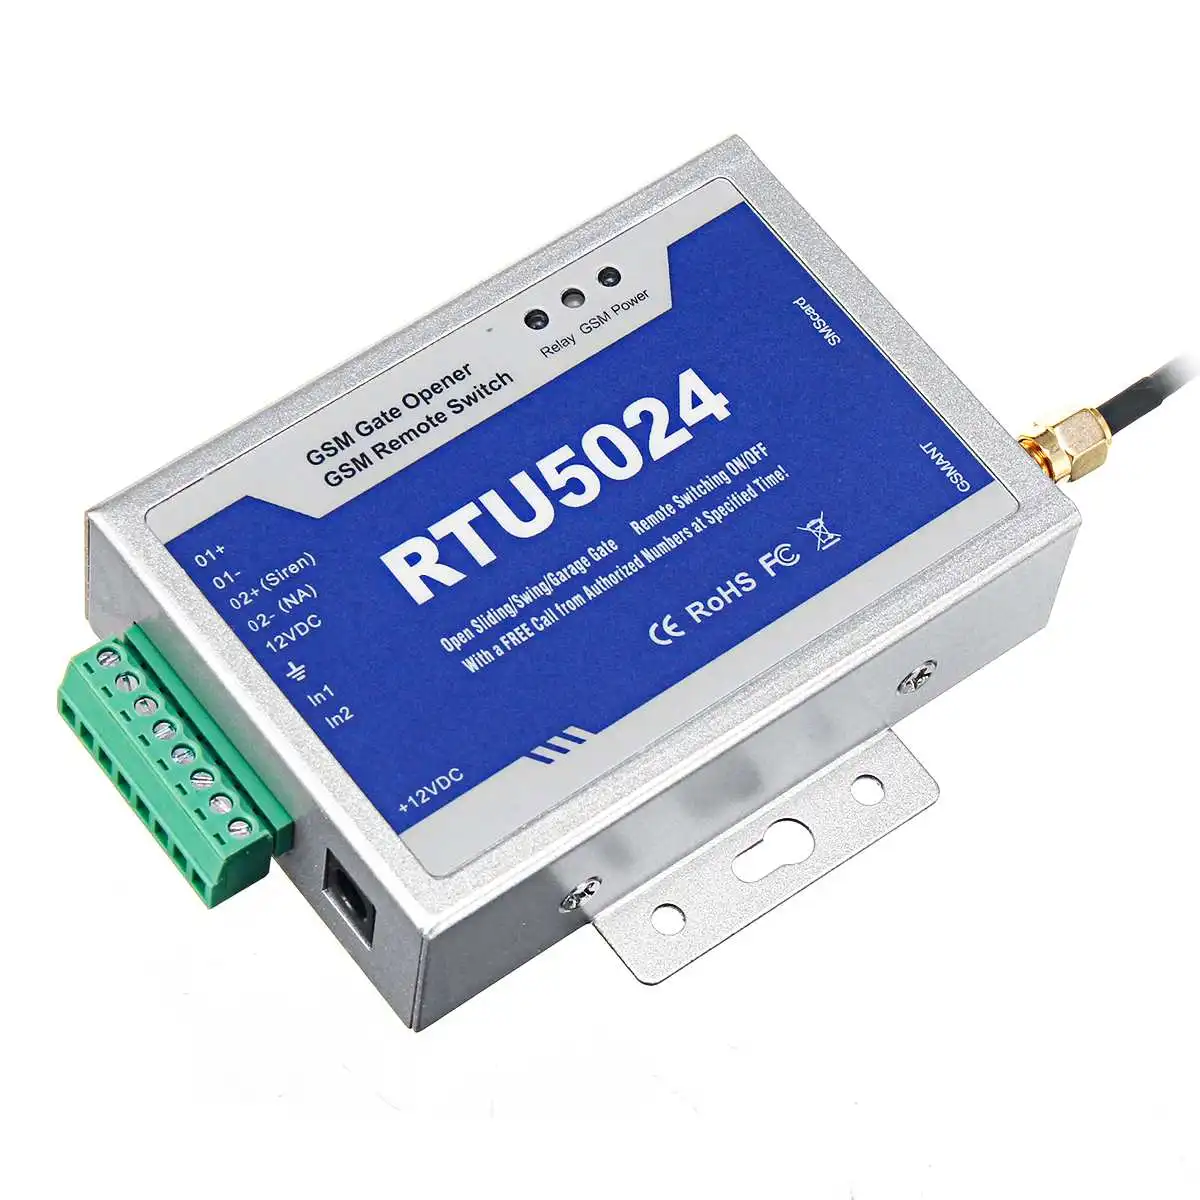 RTU5024 GSM Открыватель ворот реле дистанционного управления беспроводной дверной переключатель доступа с антенной 300 см 900/1800 МГц для парковочных систем